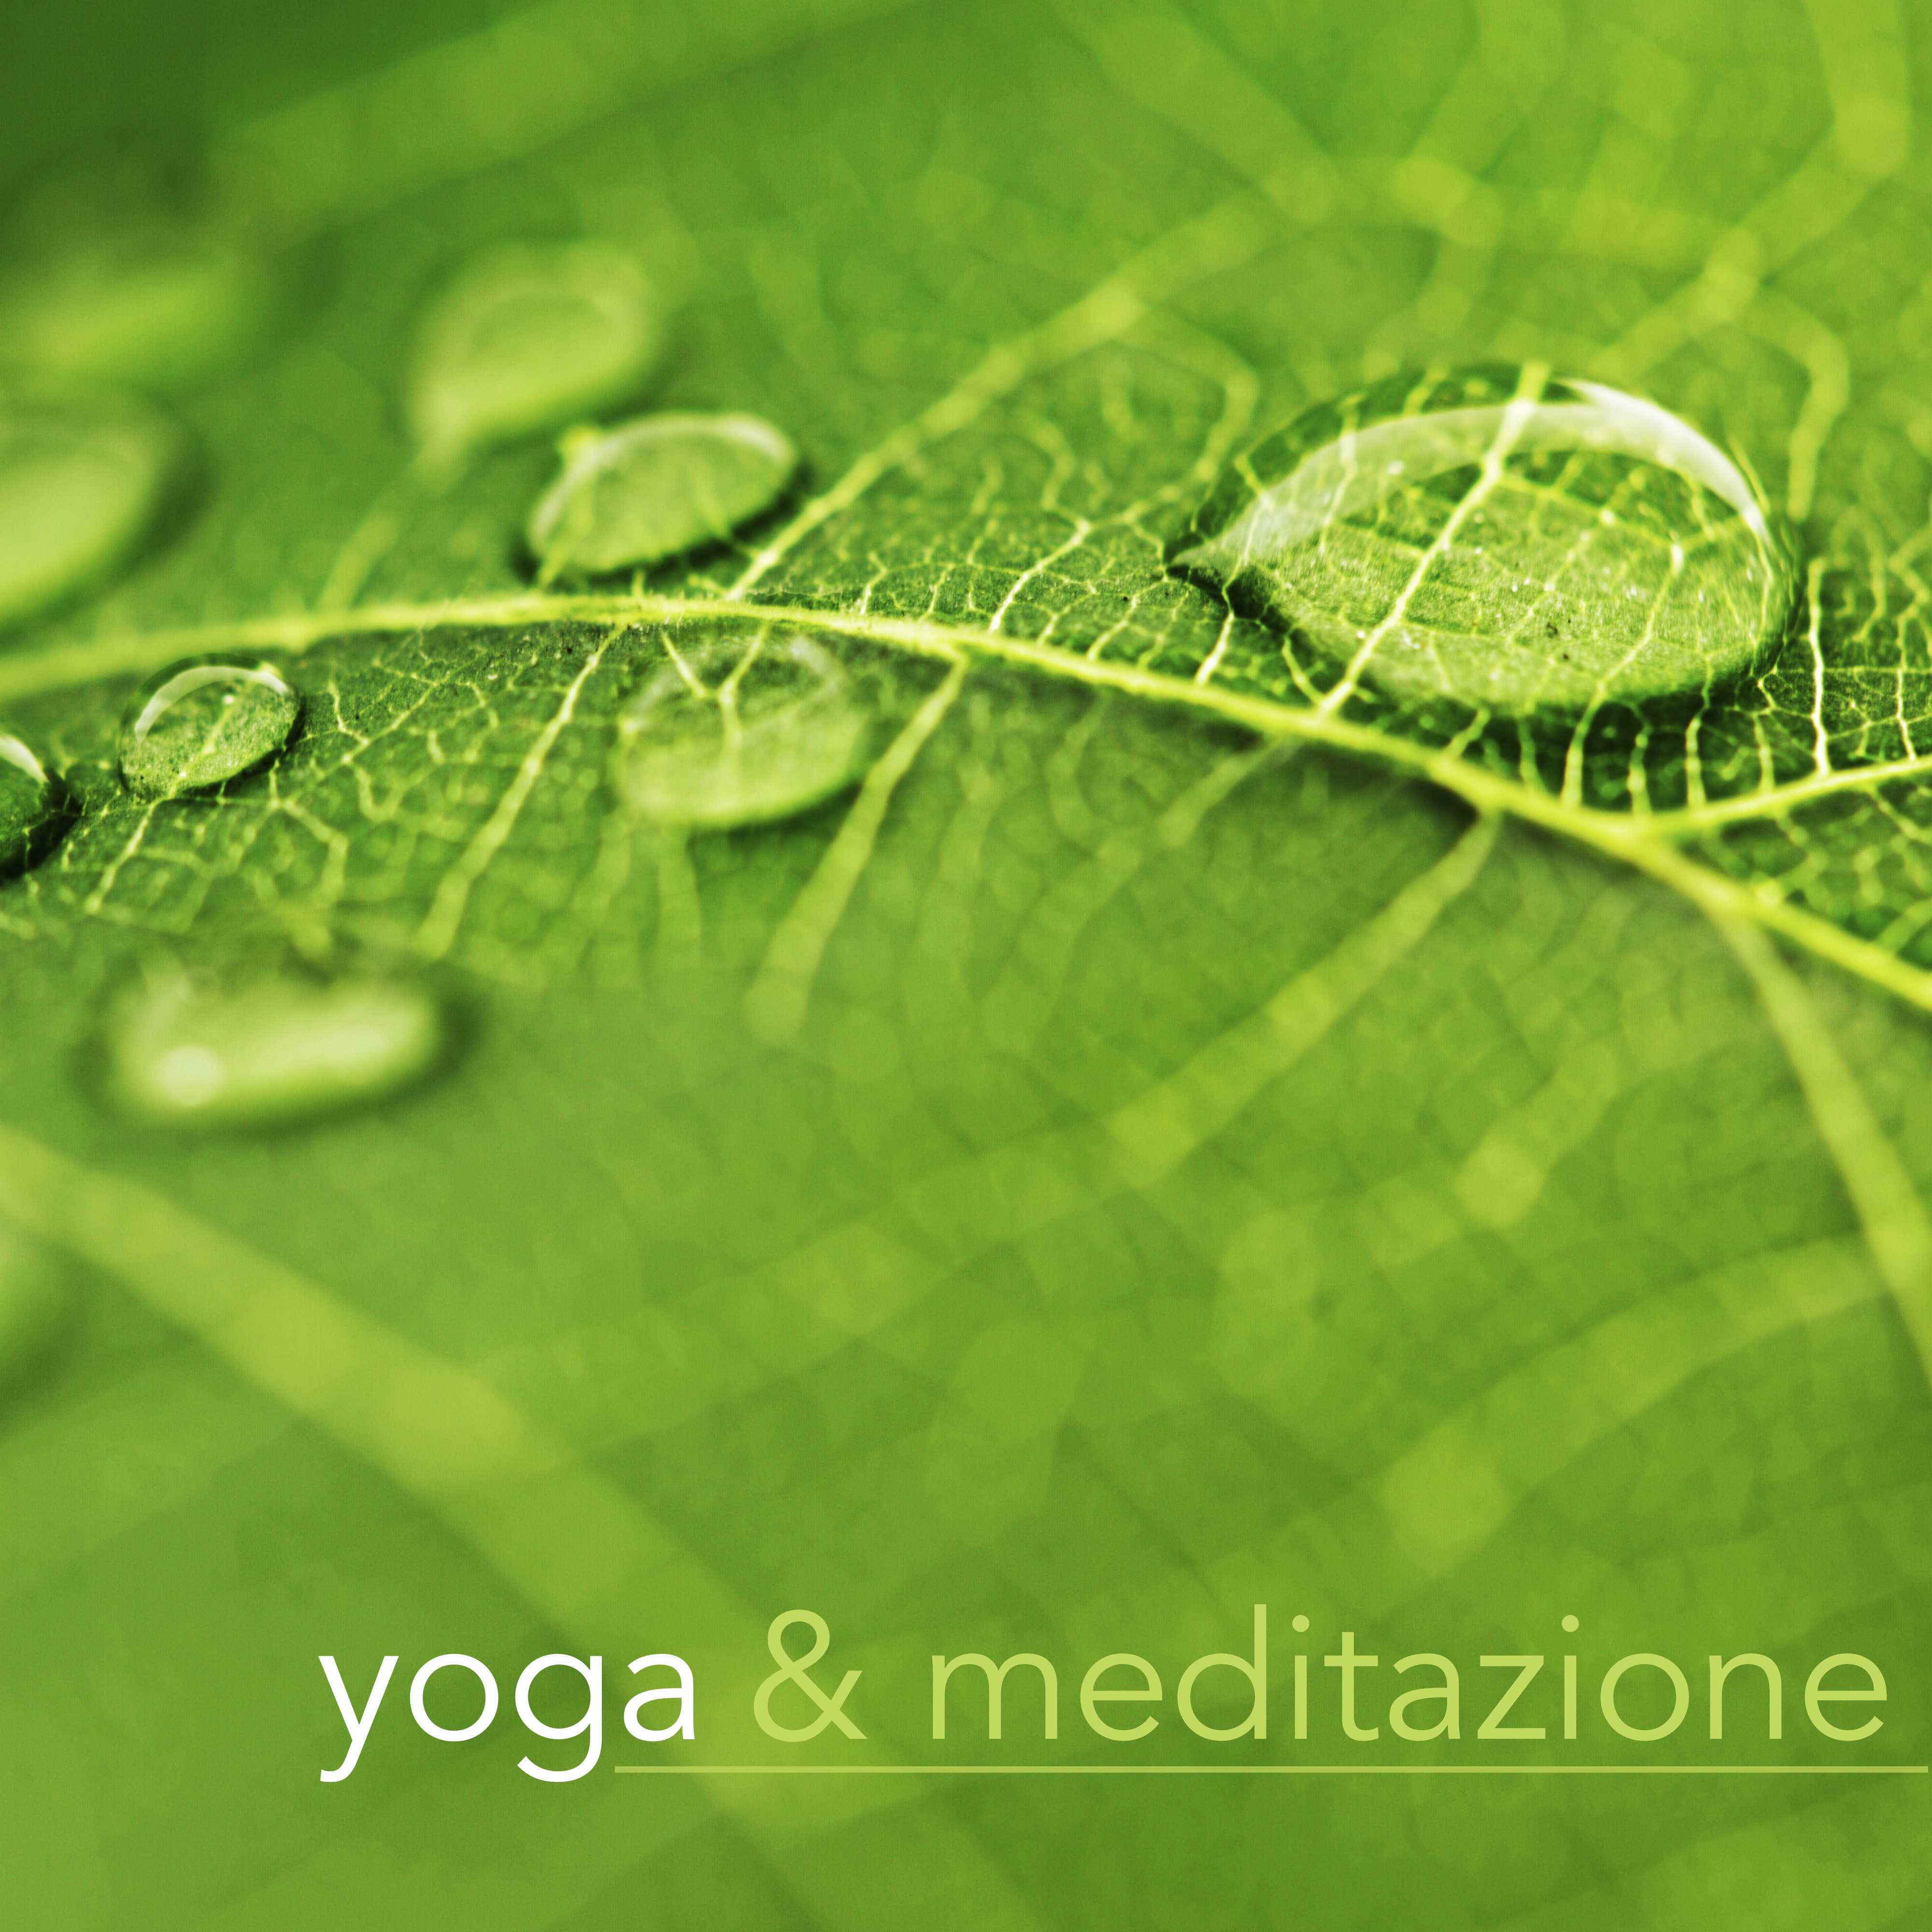 Yoga & Meditazione - Musica di Sottofondo per Lezioni di Yoga, Pilates e Reiki, Meditazione e Rilassamento